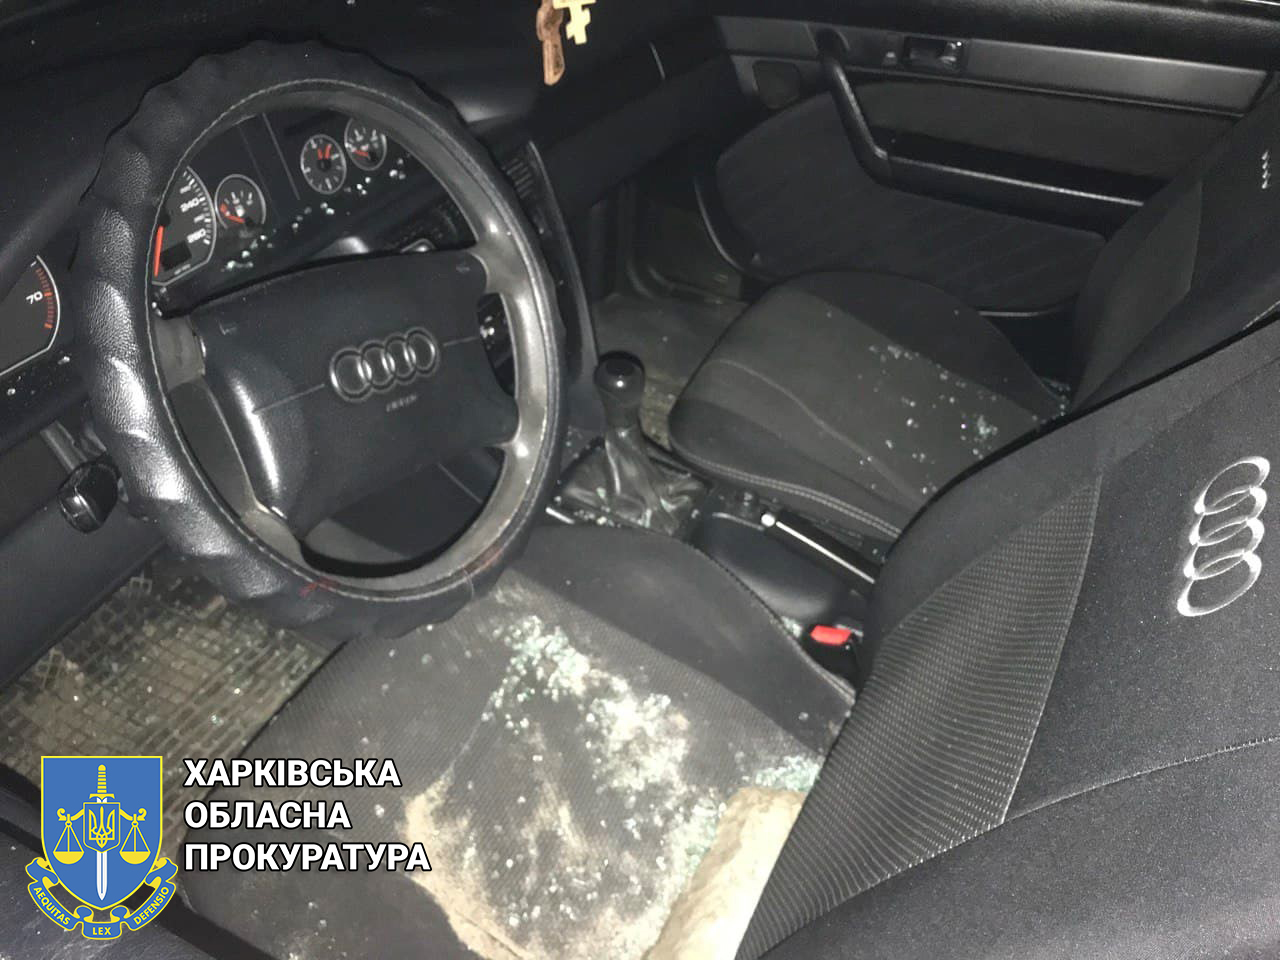 Криминал Харьков: угонщик автомобилей приговорен к 5,5 годам заключения